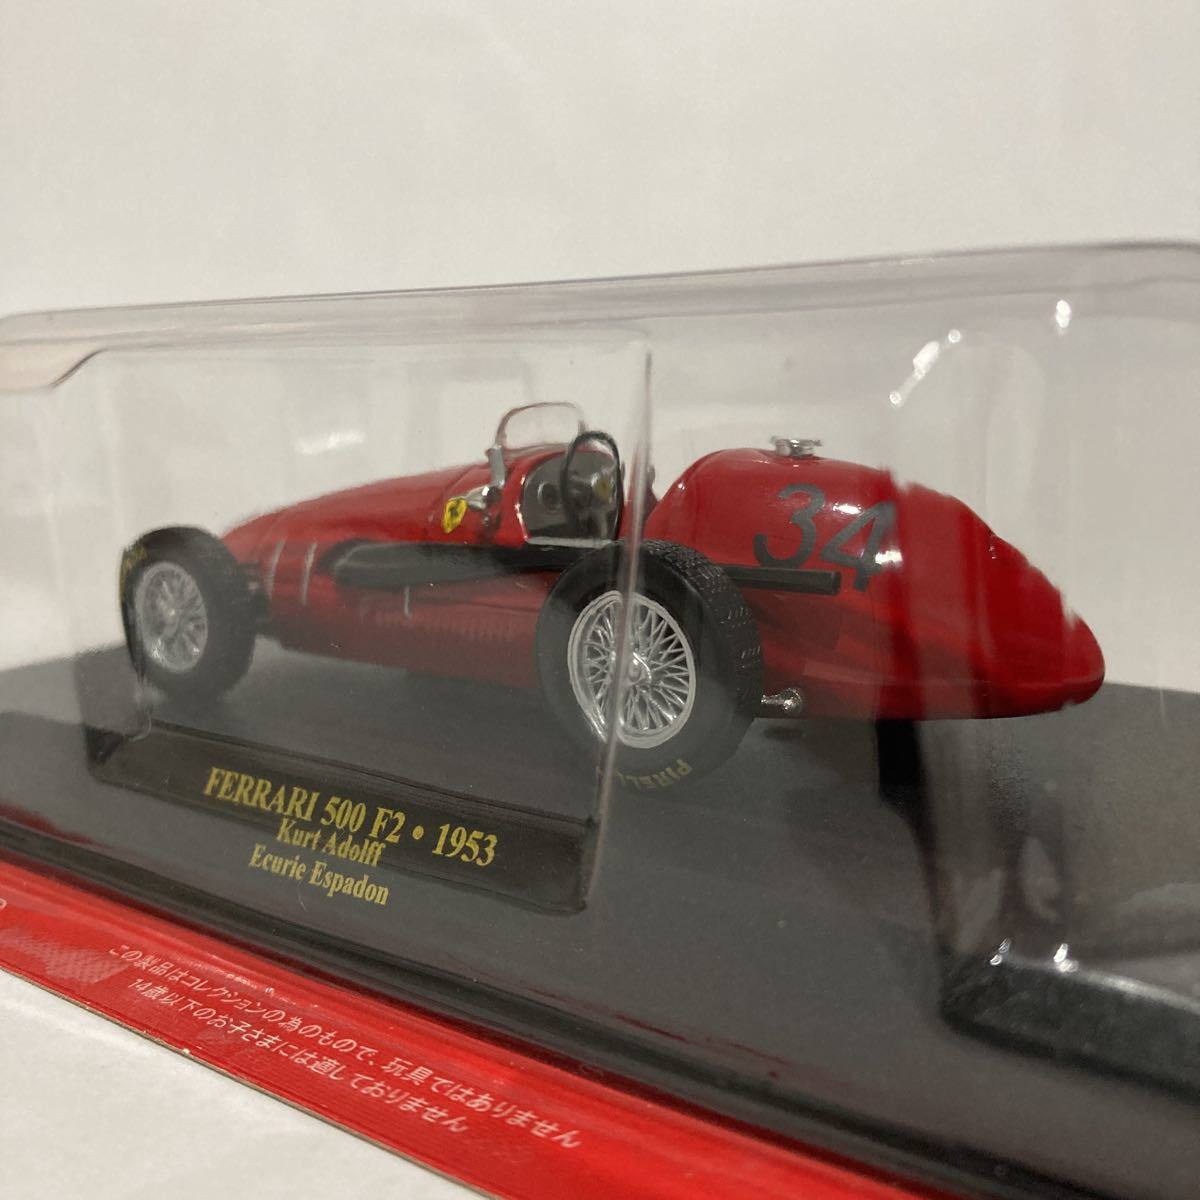 アシェット 公式フェラーリF1コレクション 1/43 Ferrari 500 F2 1953年 Kurt Adolff Ecurie Espadon #34 GP マシン ミニカー_画像4